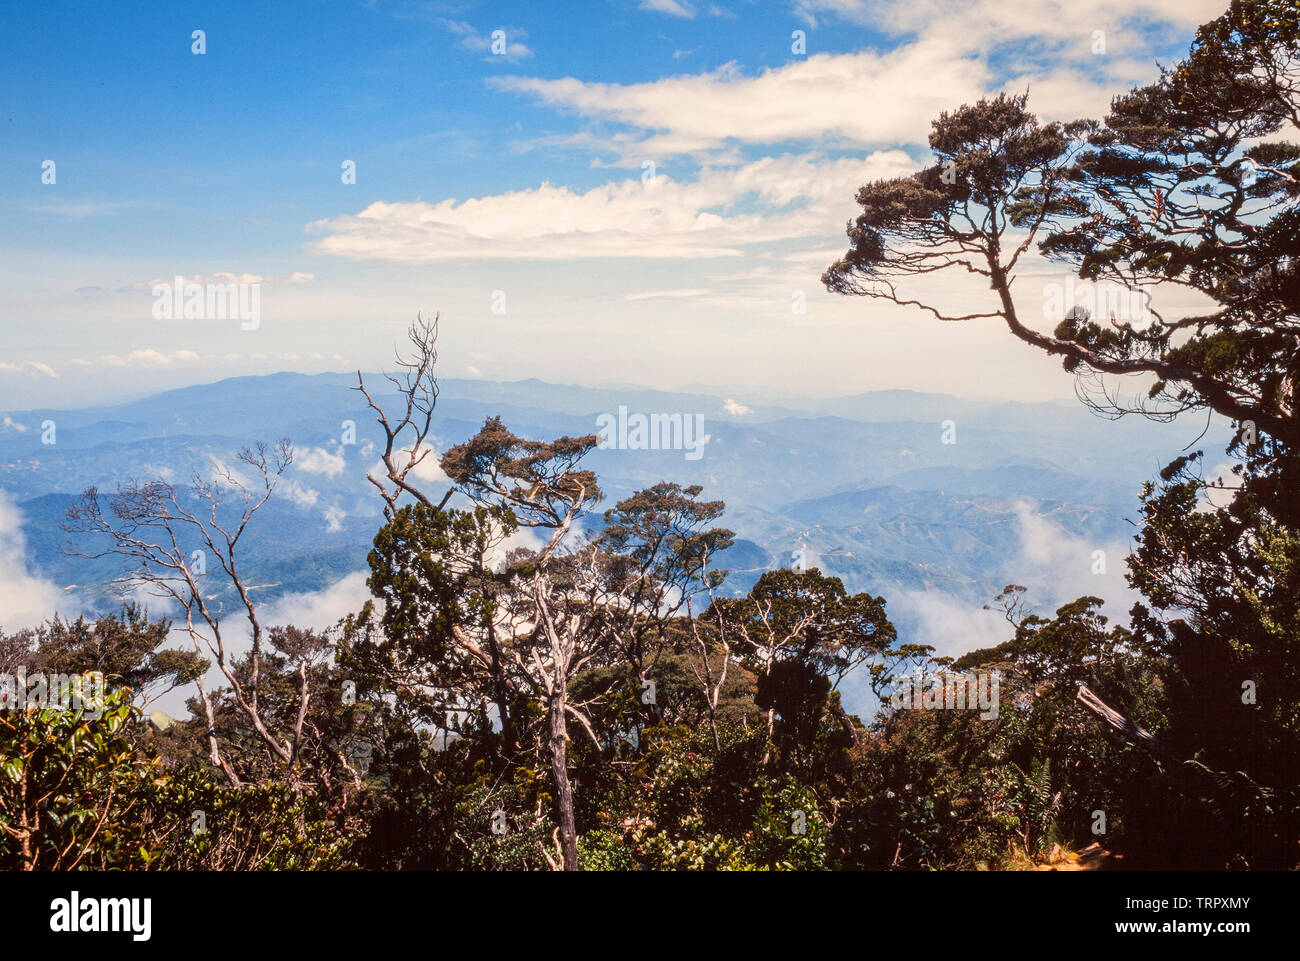 Parc National du Mont Kinabalu, Sabah, Malaisie Orientale. Sentier du sommet, vue à 3200 mètres Banque D'Images